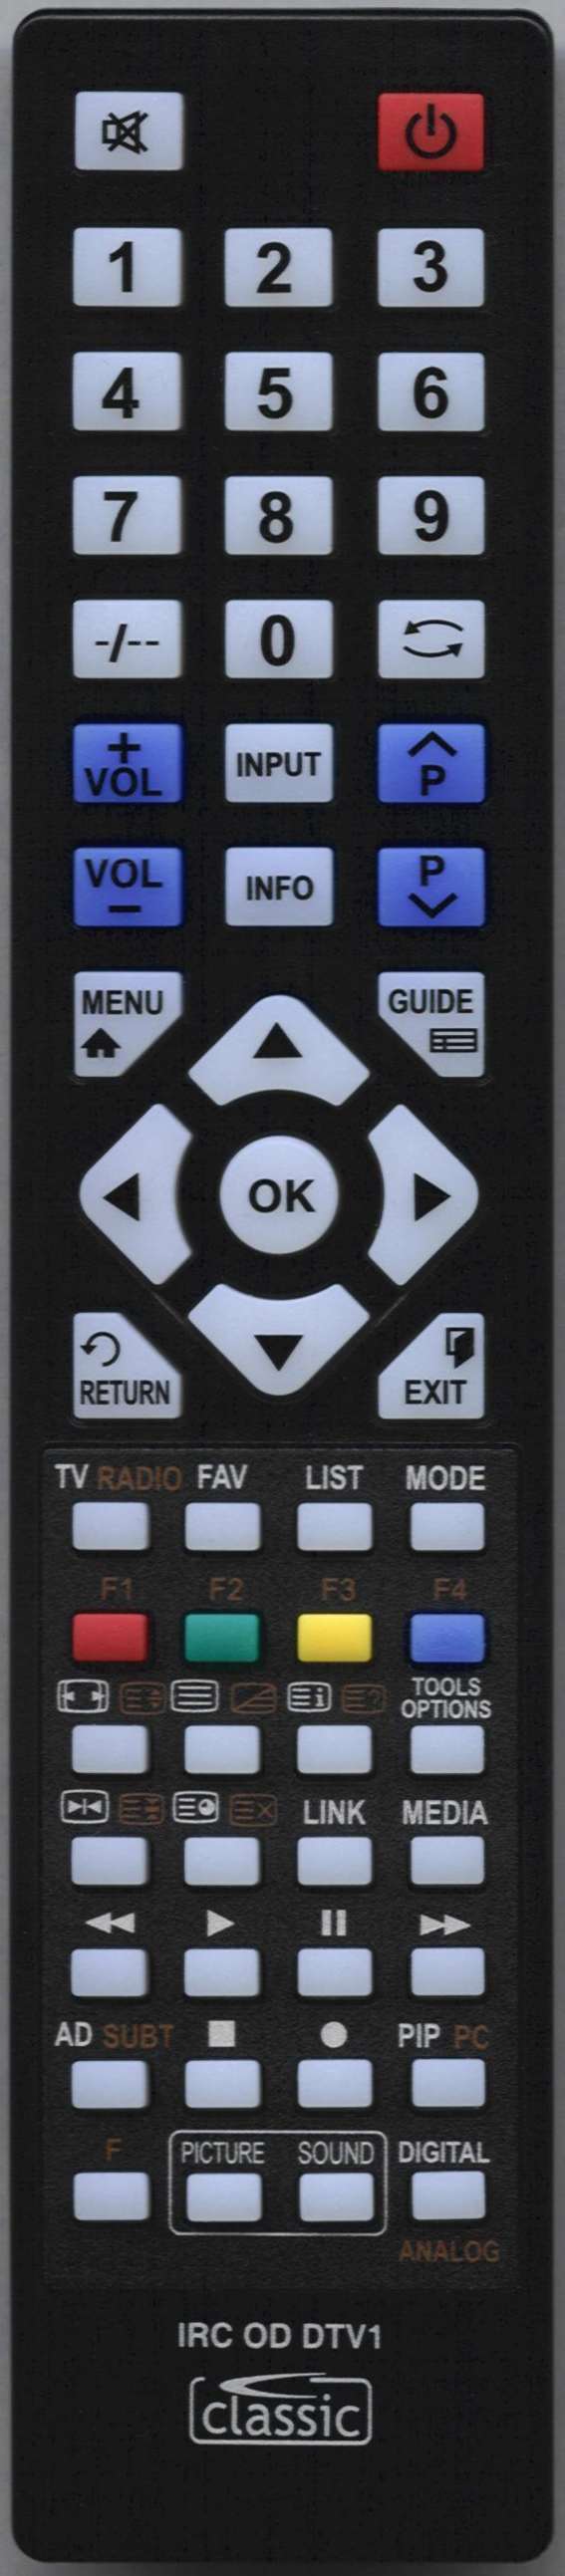 LUXOR 5652 2556 Remote Control Alternative